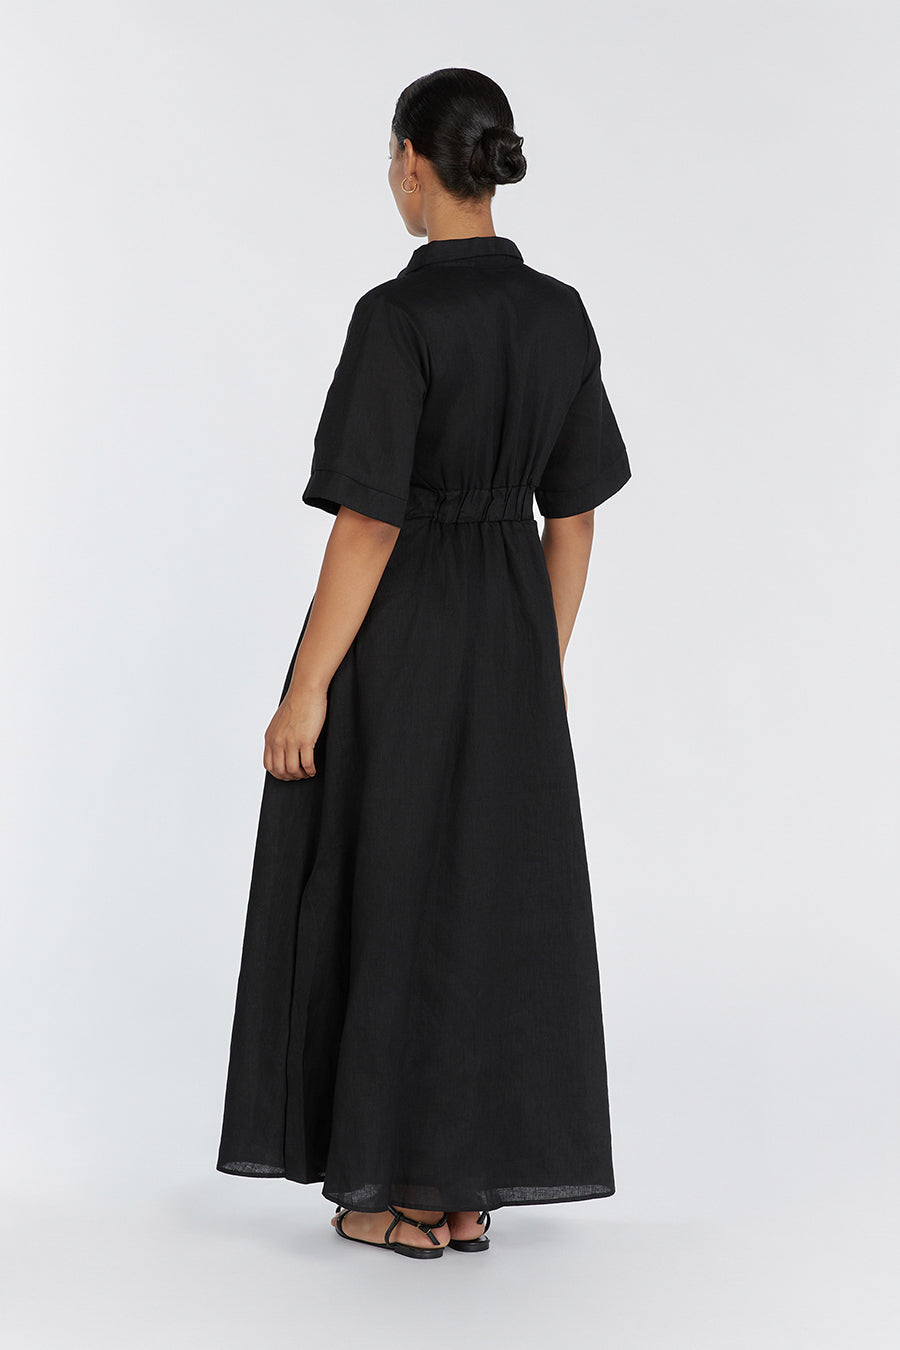 FRANNIE BLACK LINEN SHIRT DRESS | Dissh